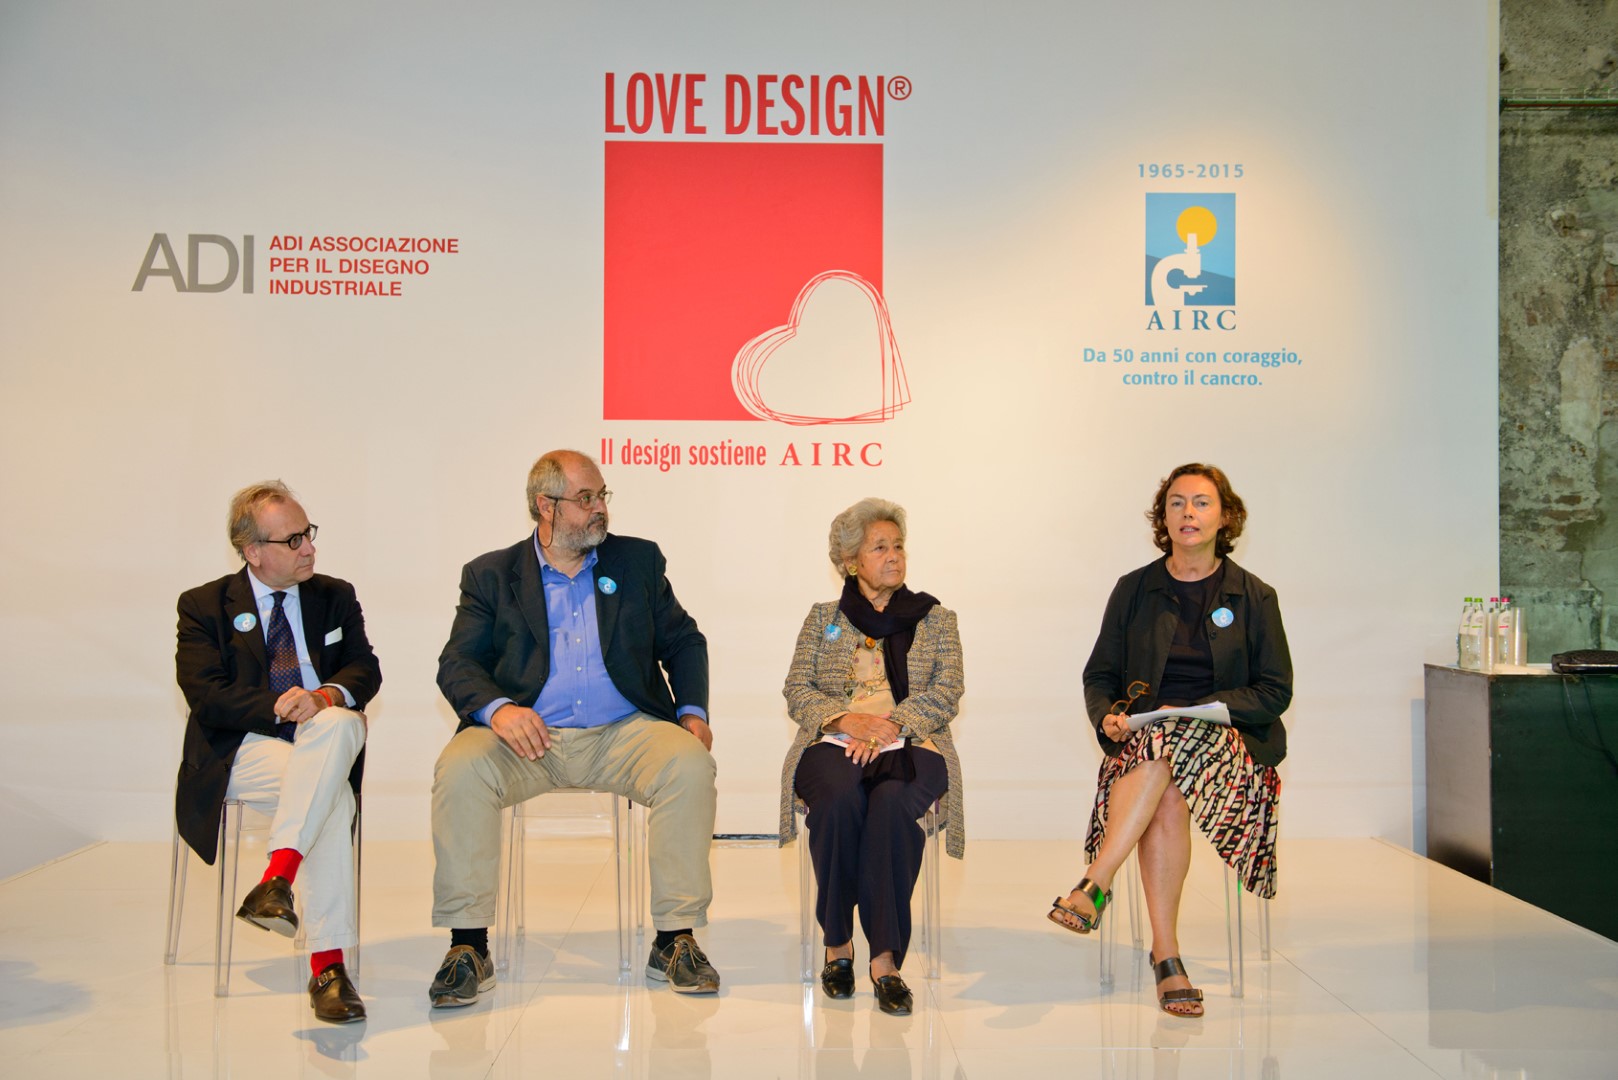 Love Design Milano 2015: a dicembre il grande evento benefico a sostegno della ricerca oncologica italiana